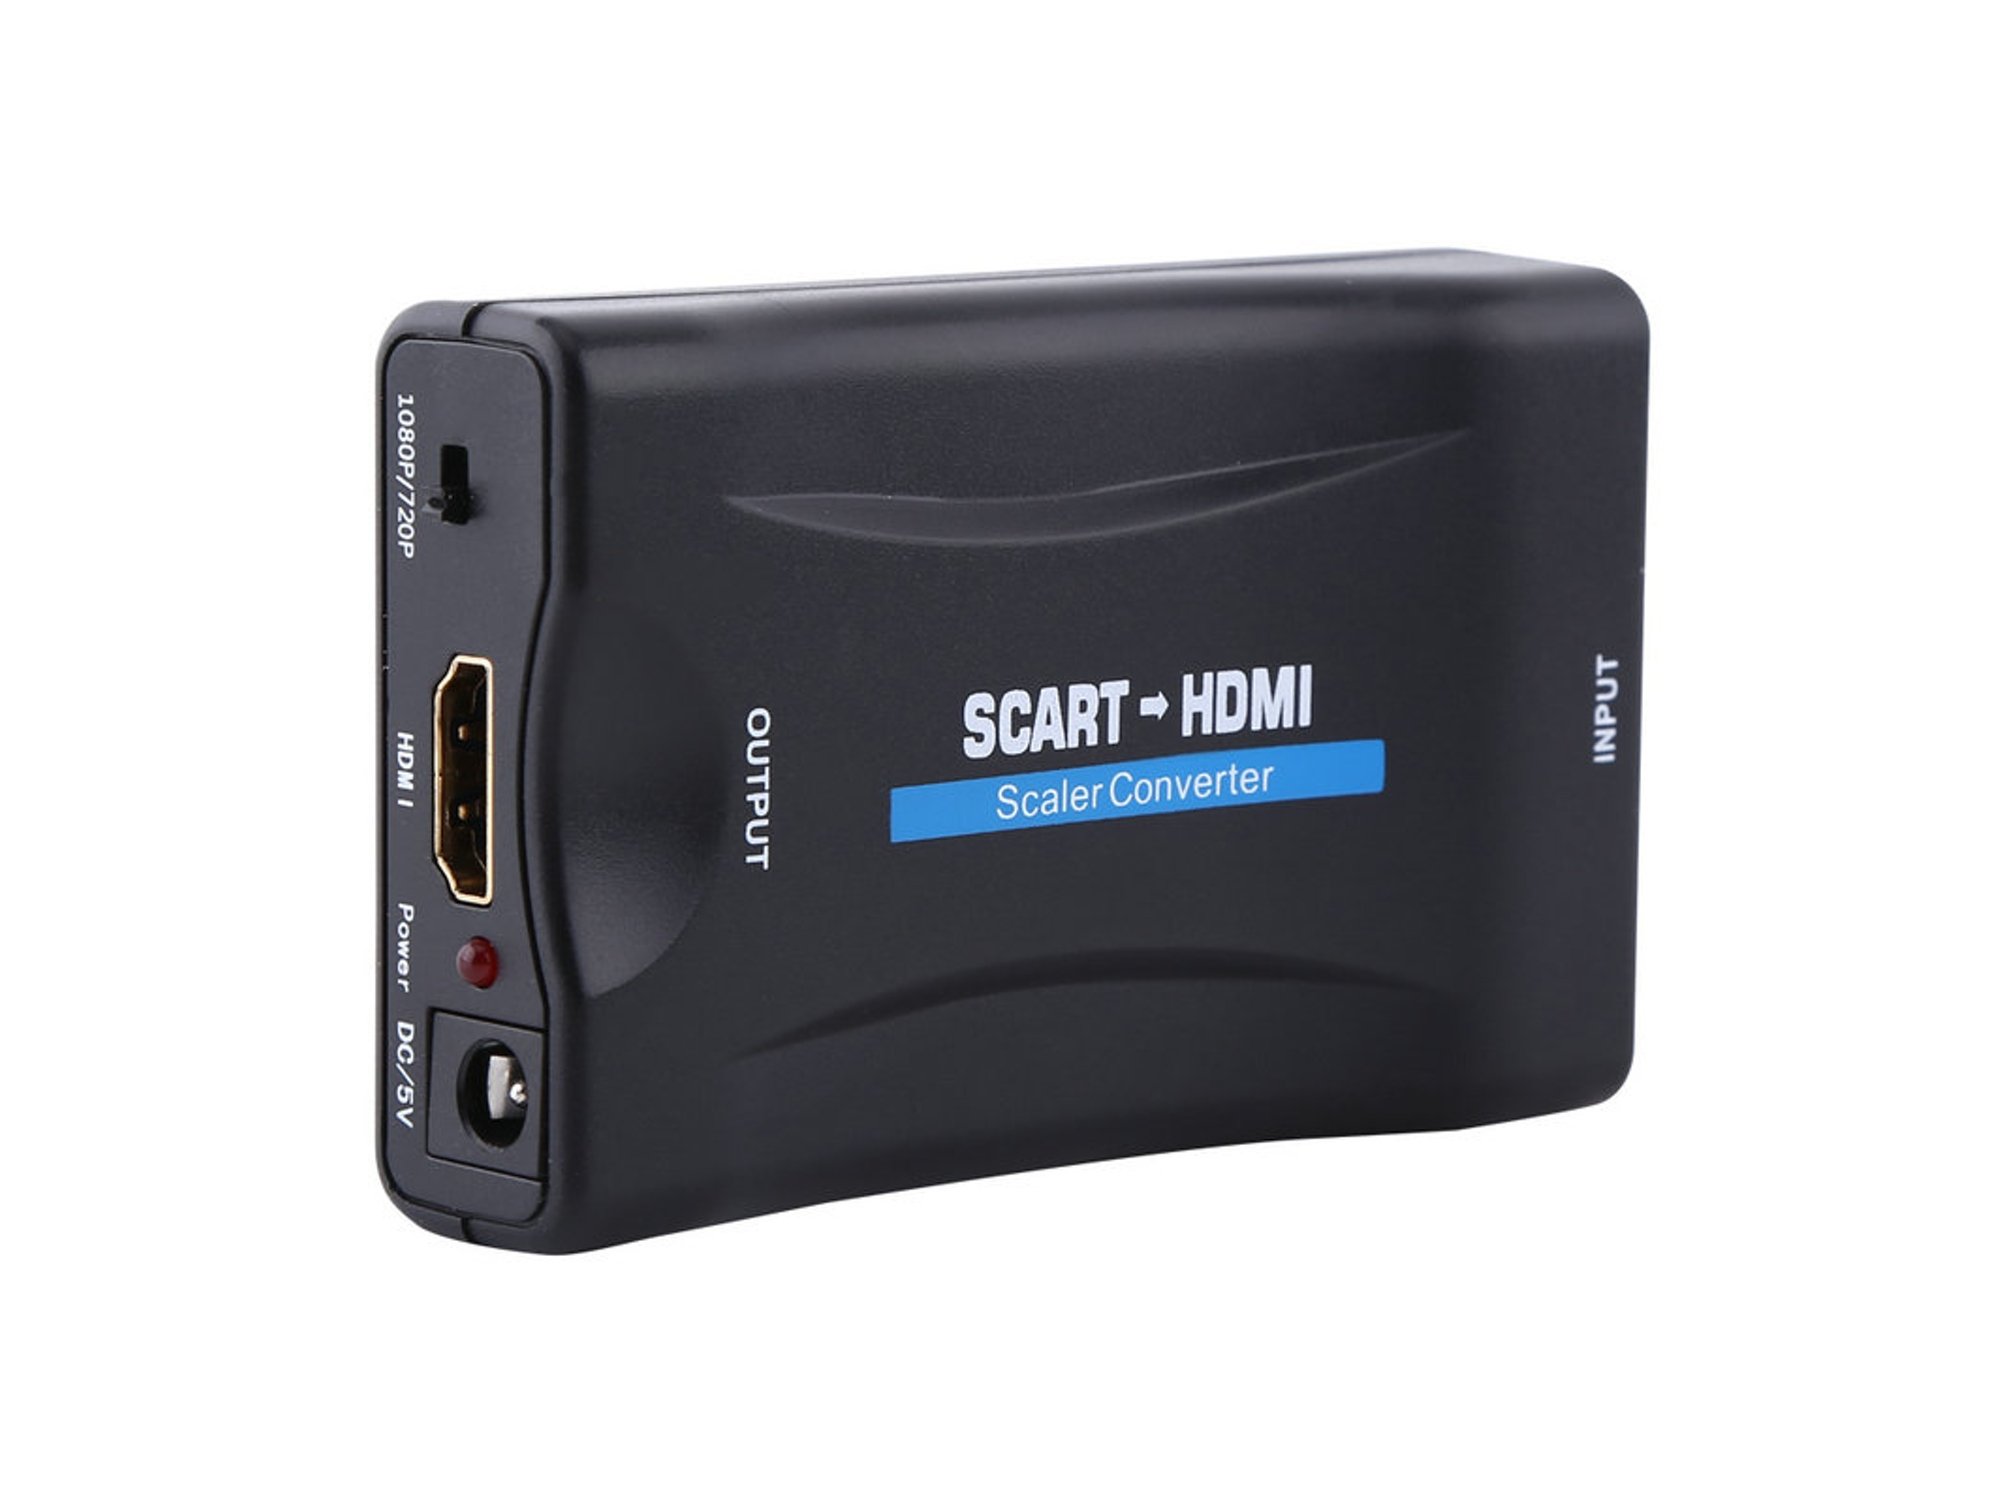 Convertidor Scart para HDMI / Scart to HDMI Converter